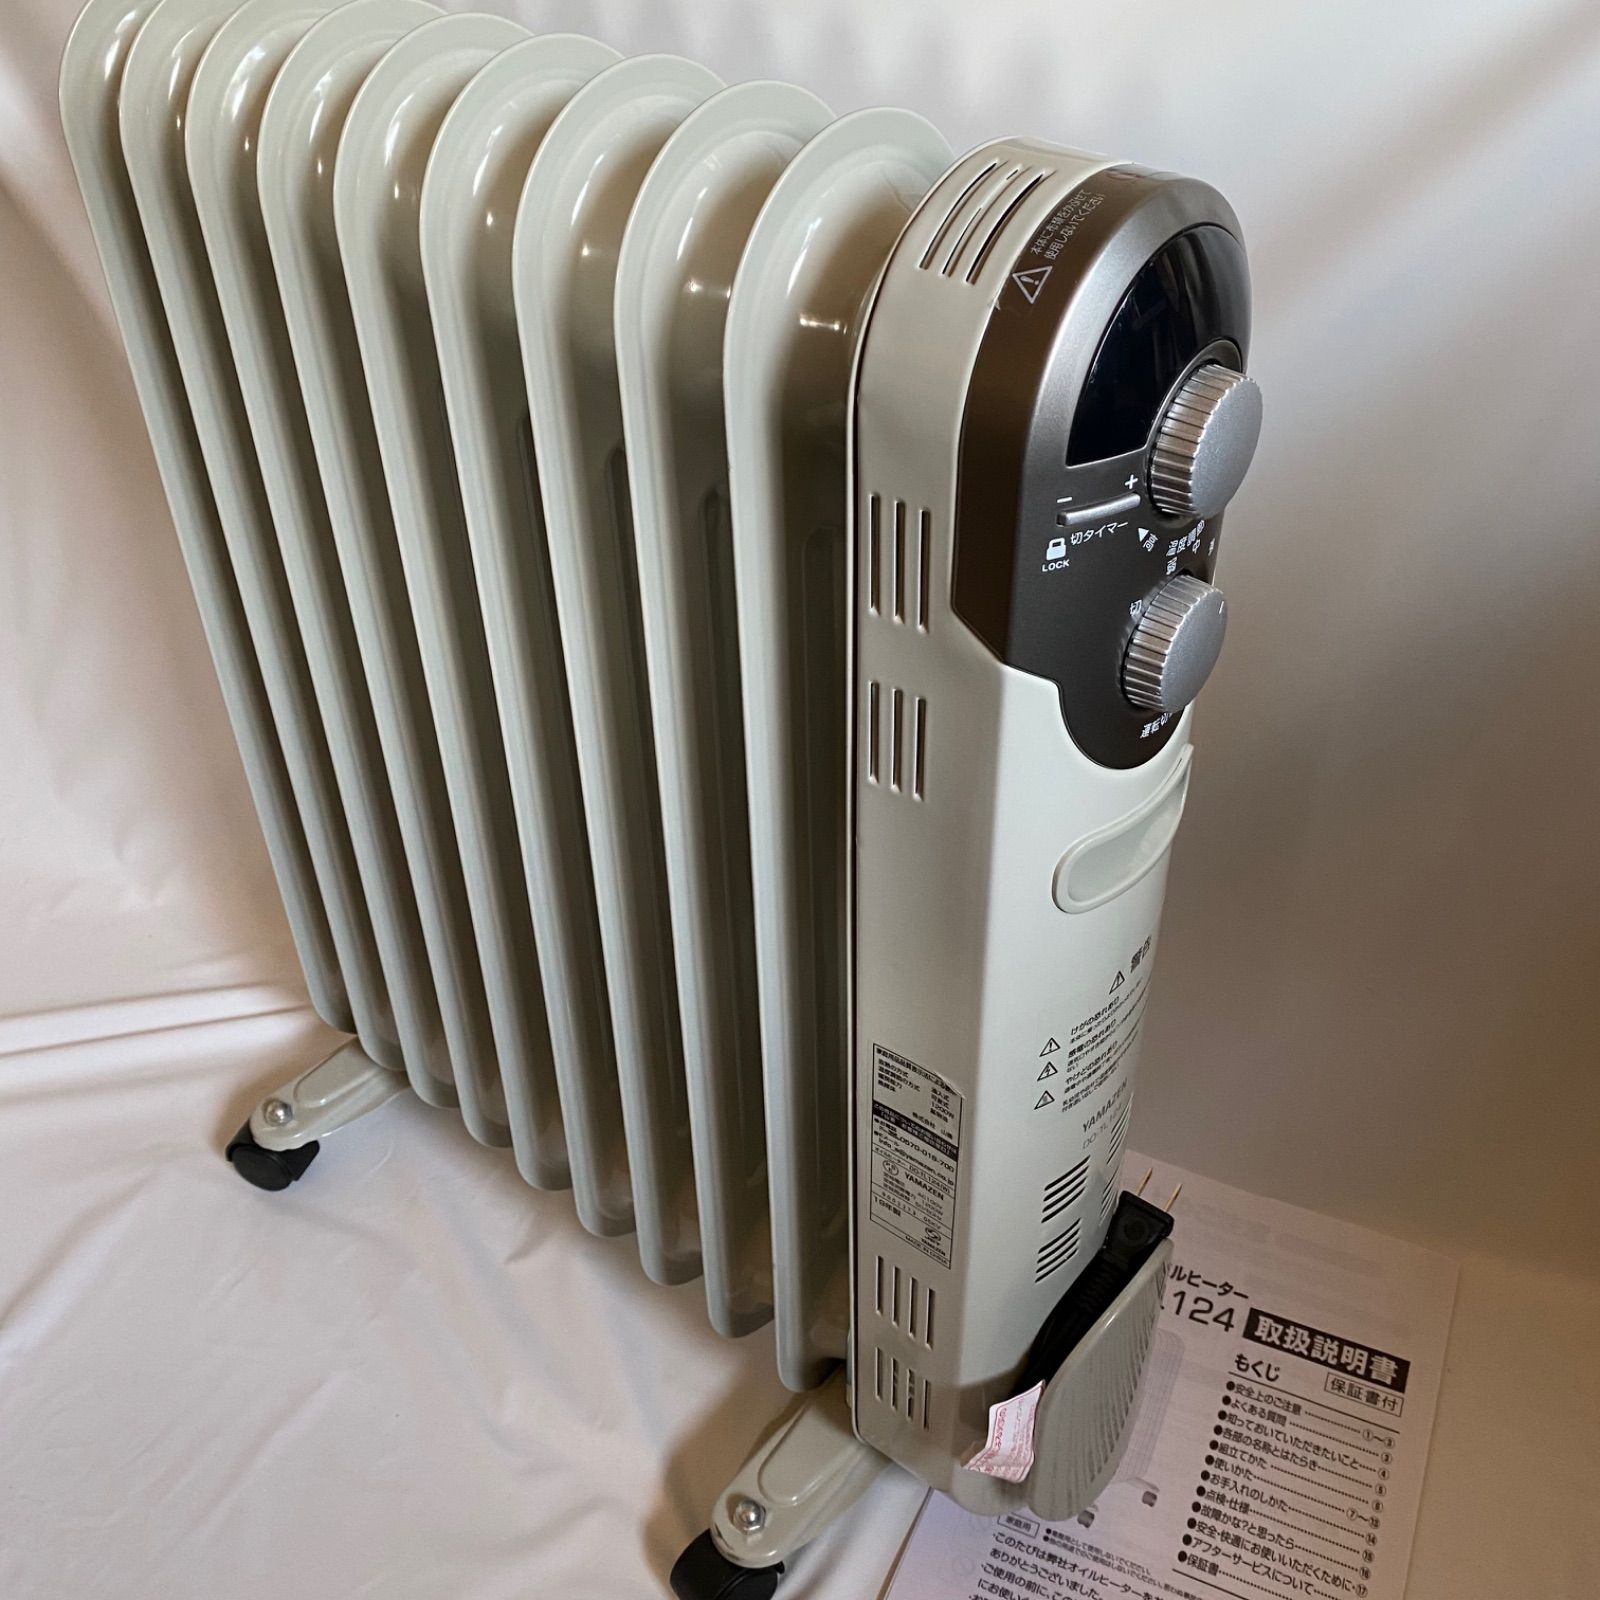 山善社製マイコンオイルヒーターDO-TL124 ストーブ 暖房